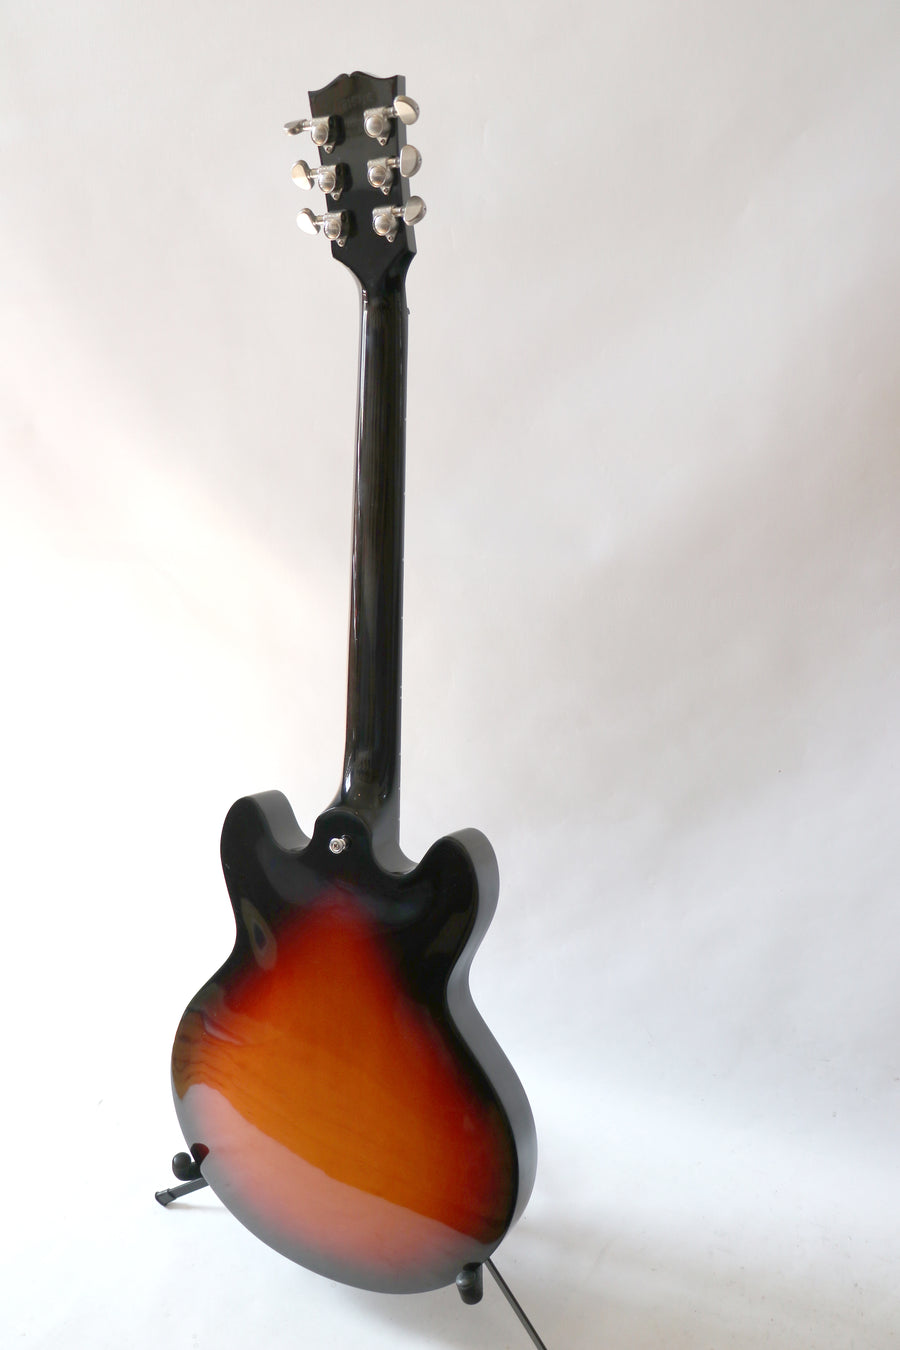 Gibson ES-339 Studio 2016